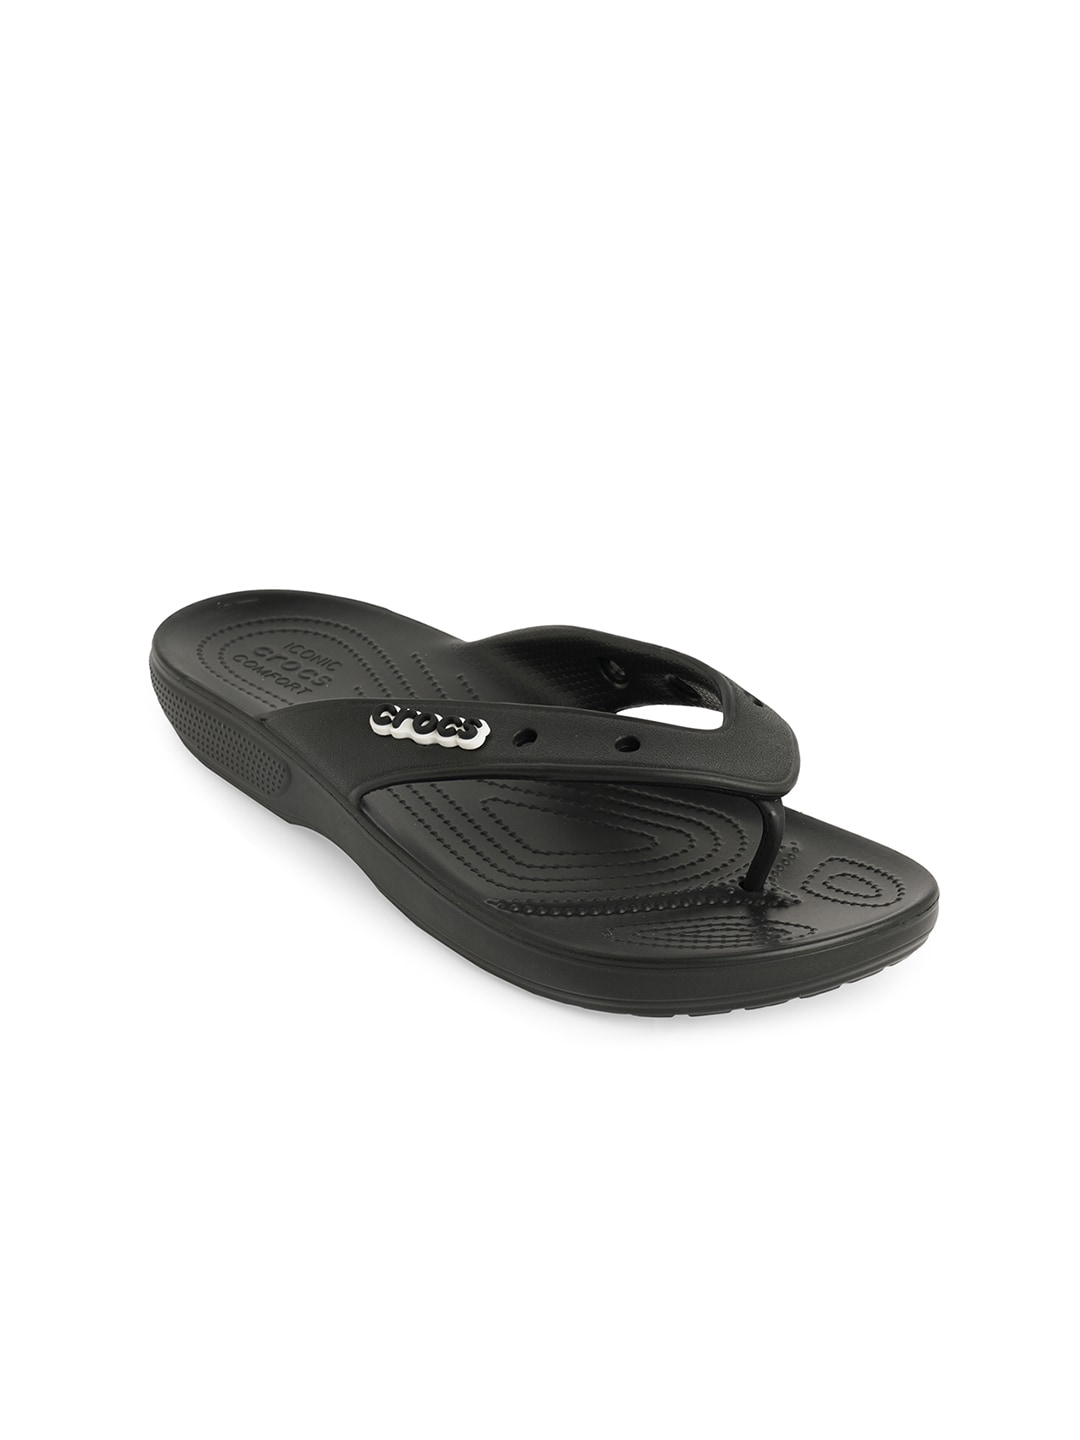 Crocs Unisex Black Classic Thong Flip-Flops Price in India